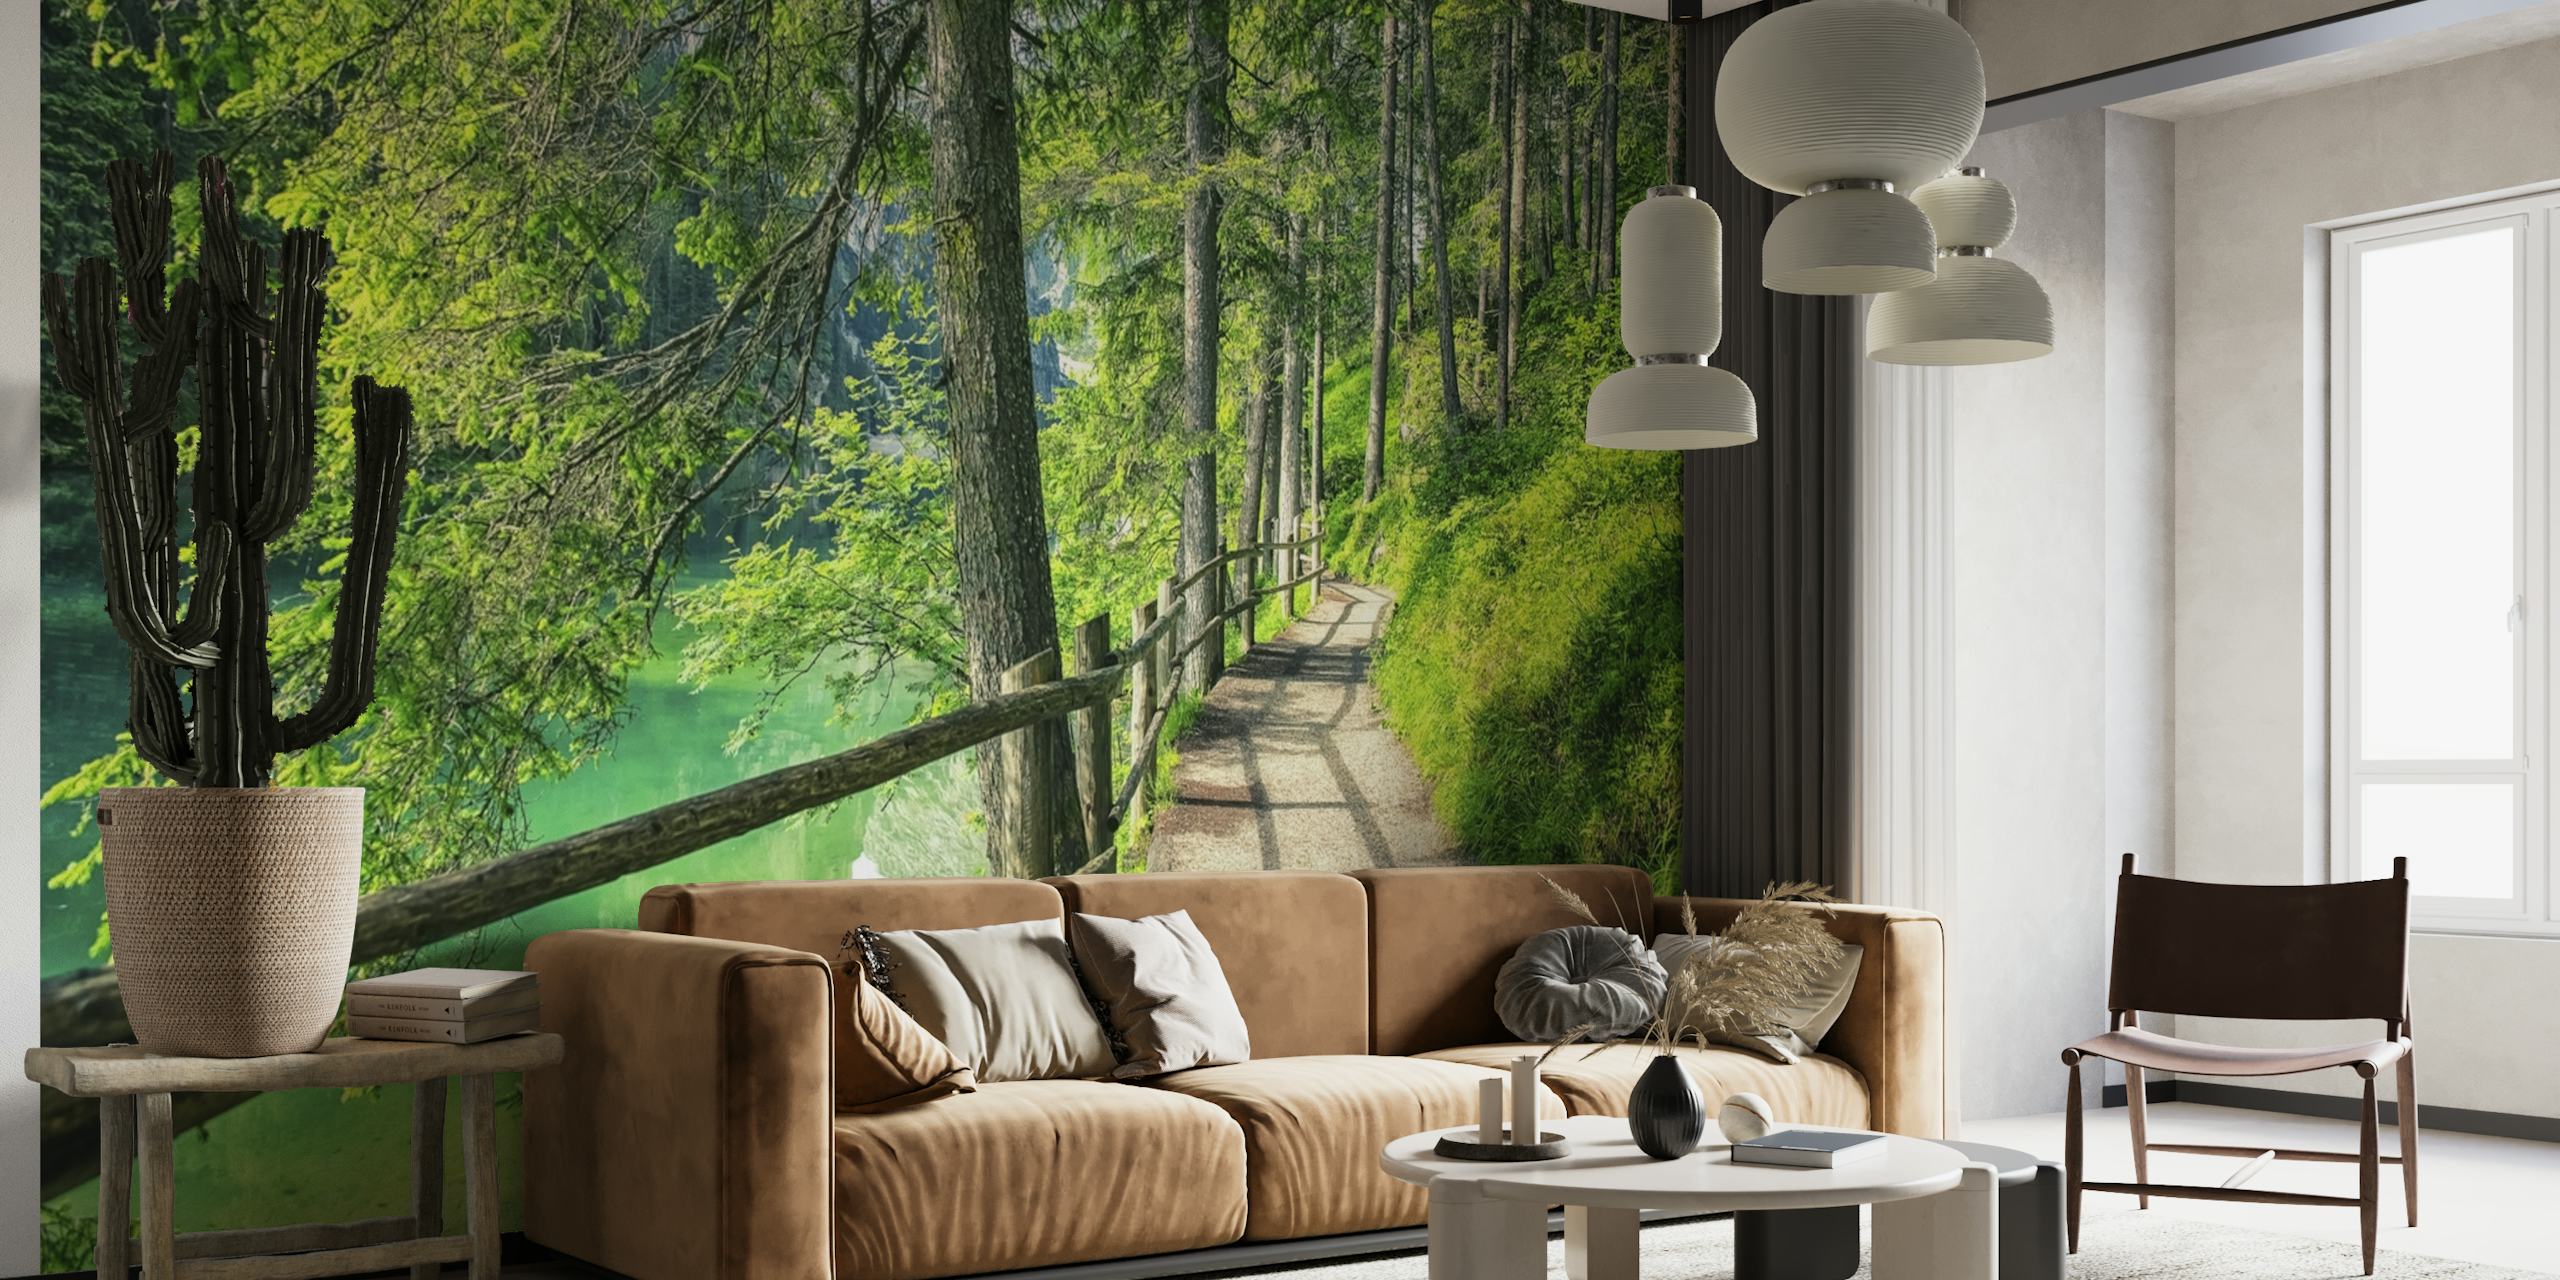 Mural de parede de um caminho tranquilo na floresta com folhagem verde vibrante e uma cerca de madeira